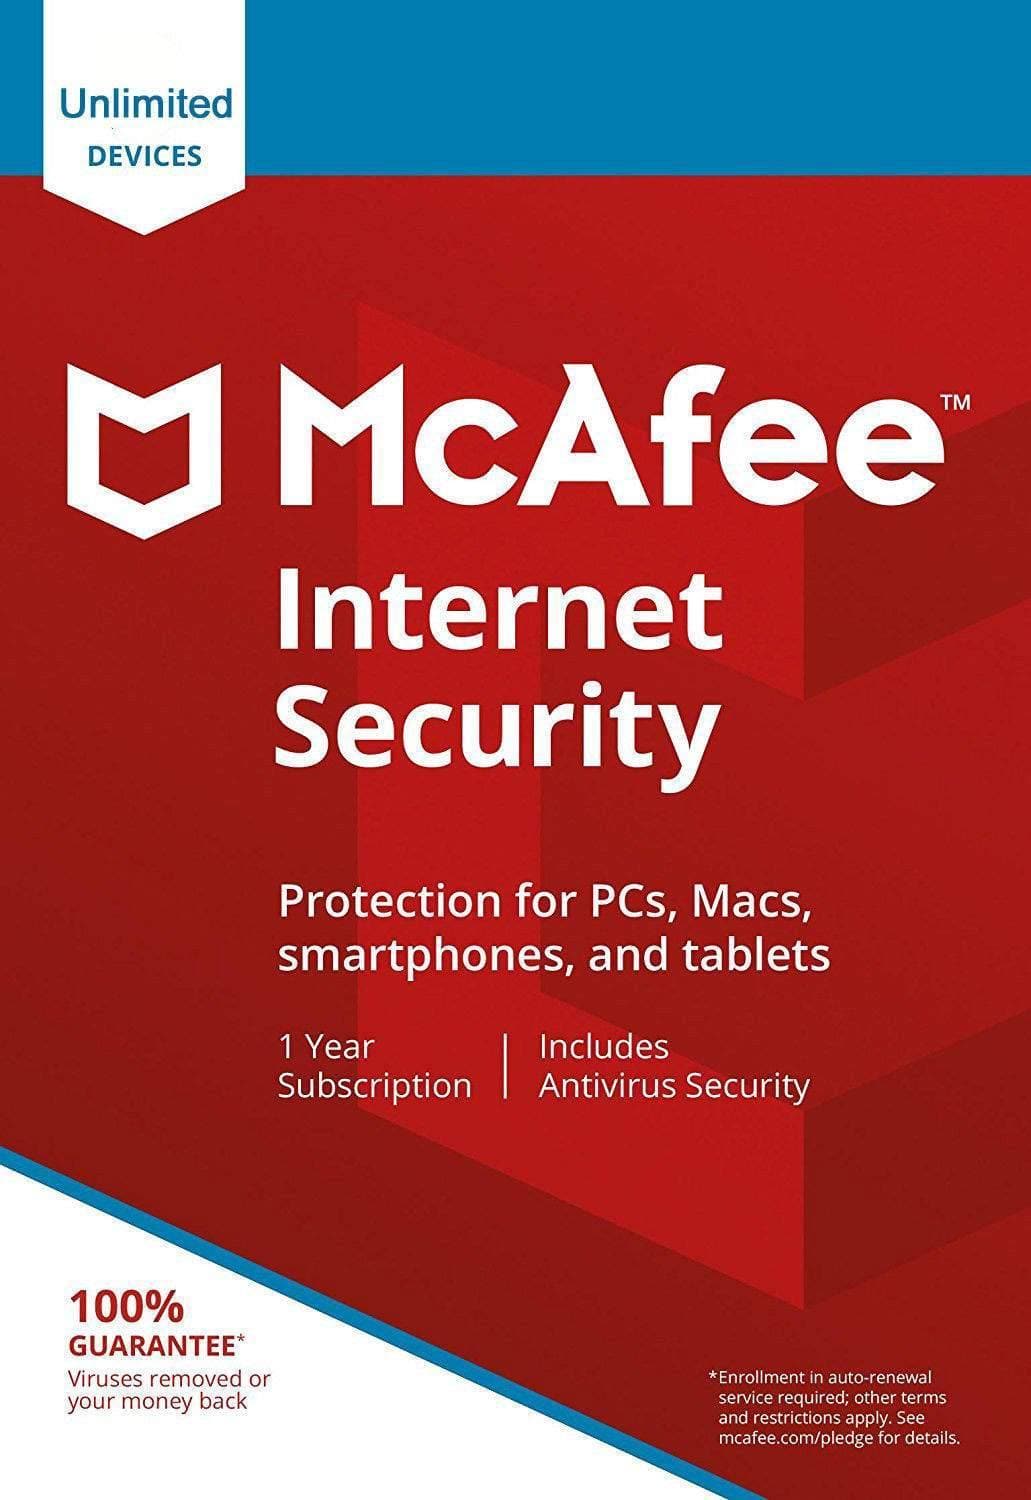 Mcafee Internet Security 2021 - EXON - גיימינג ותוכנות - משחקים ותוכנות למחשב ולאקס בוקס!